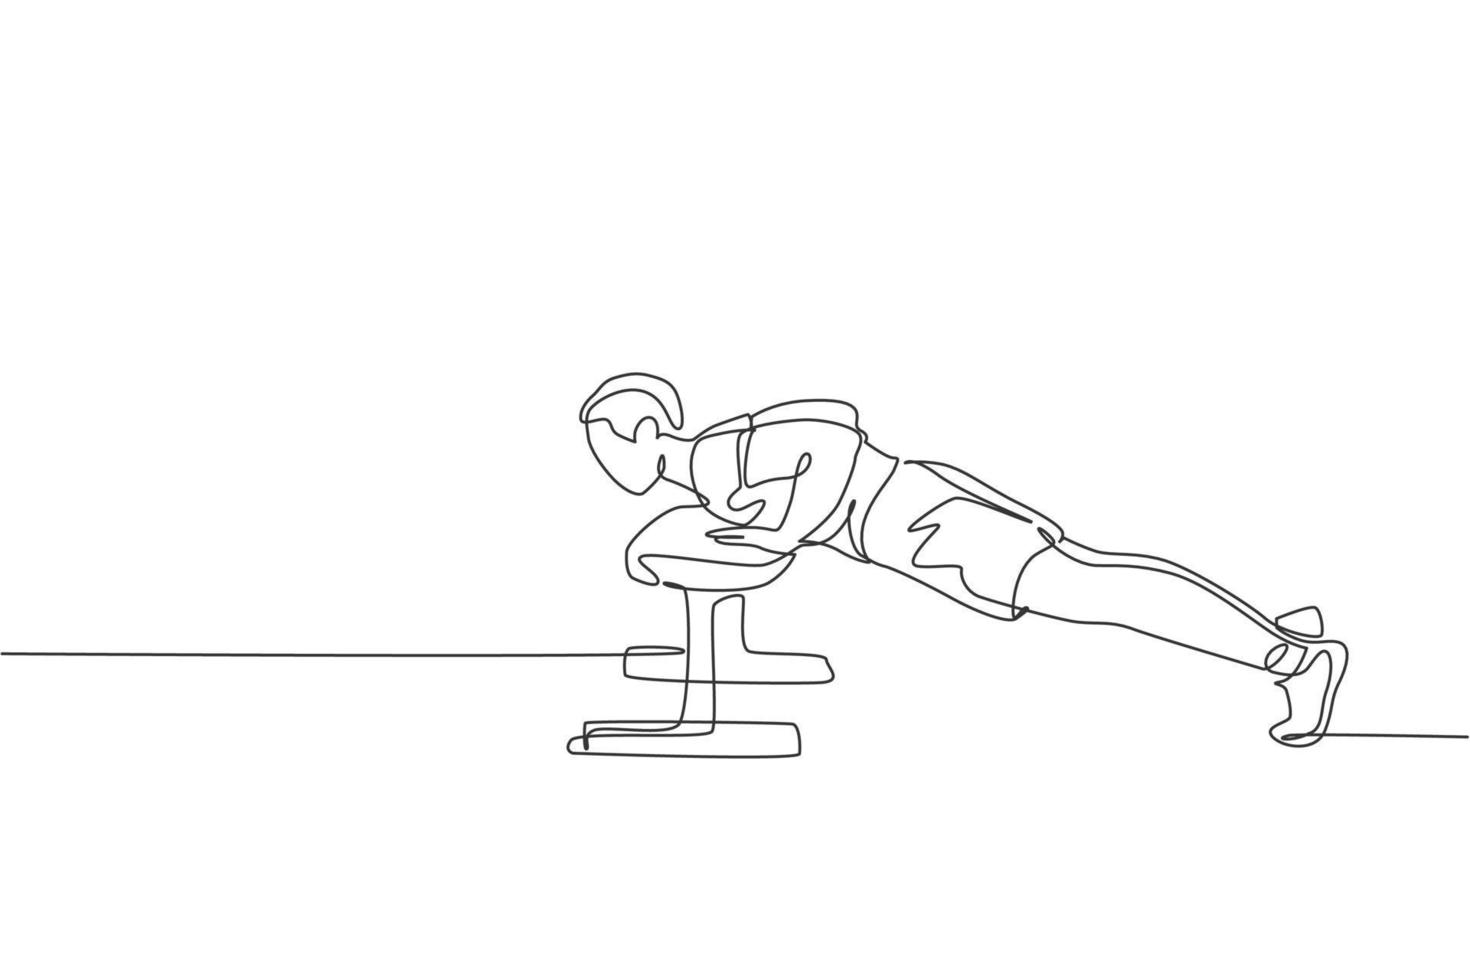 un dibujo de una sola línea del ejercicio de un joven enérgico empuja hacia arriba con un banco en el gimnasio ilustración vectorial gráfica del centro de fitness. concepto de deporte de estilo de vida saludable. diseño moderno de dibujo de línea continua vector